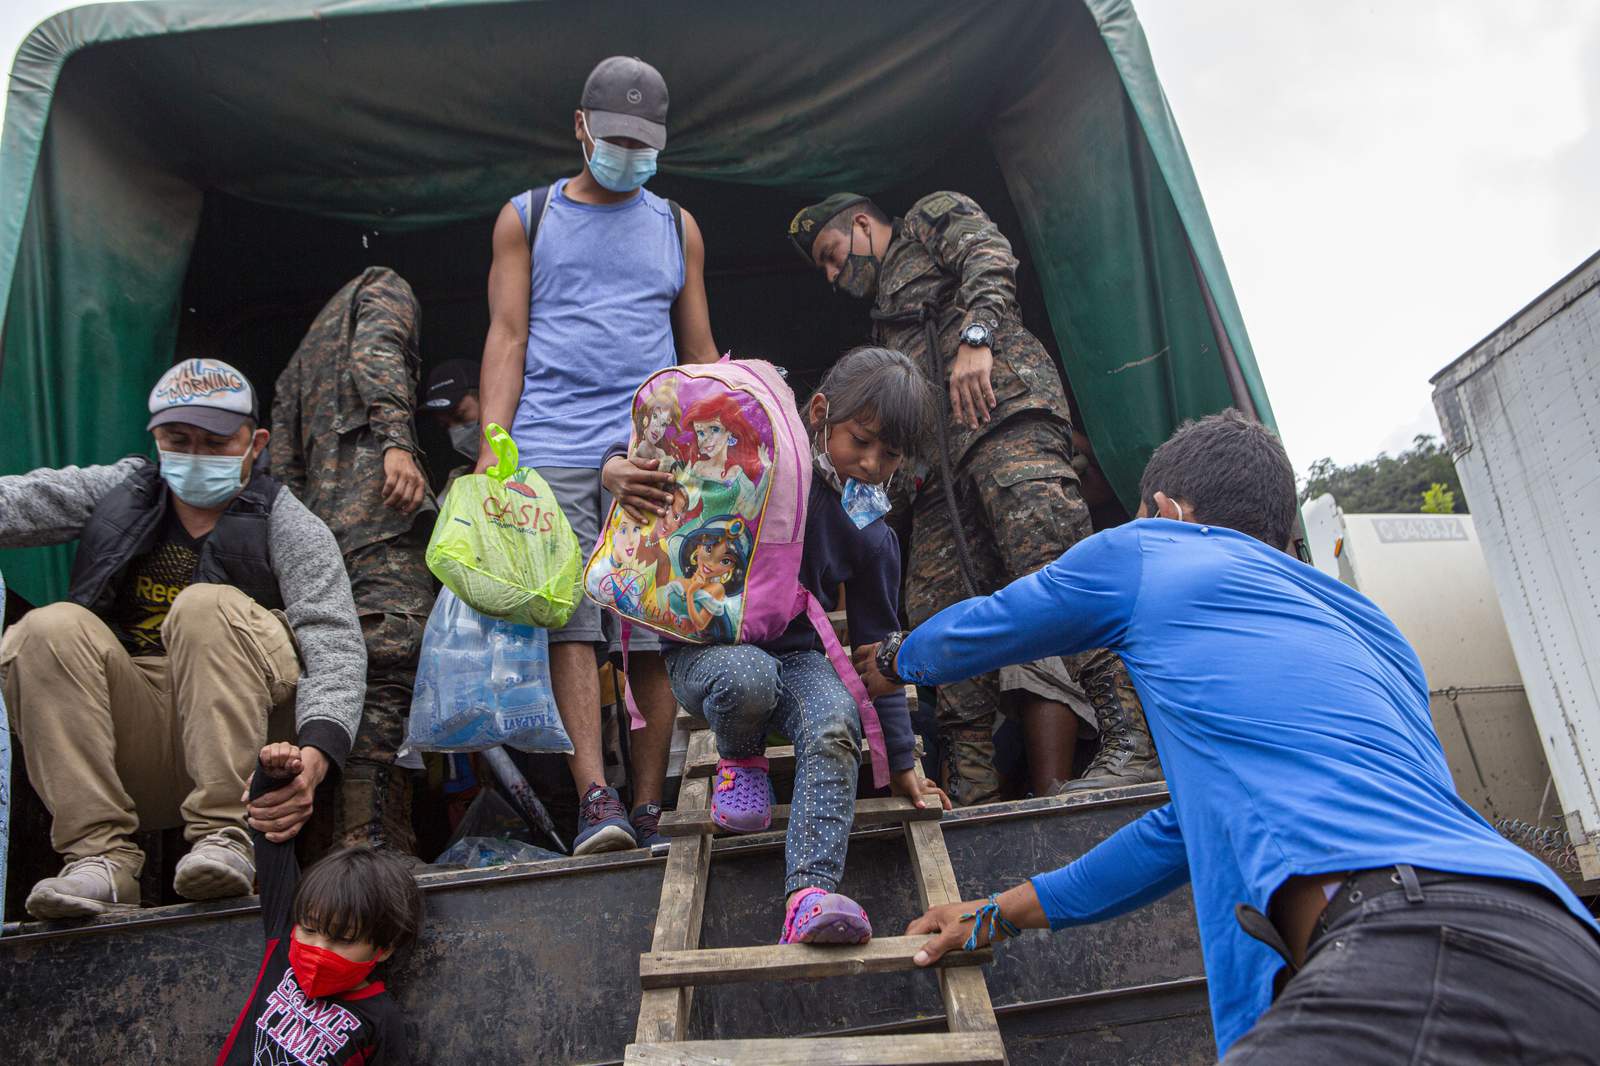 Large migrant caravan dissolves in Guatemala